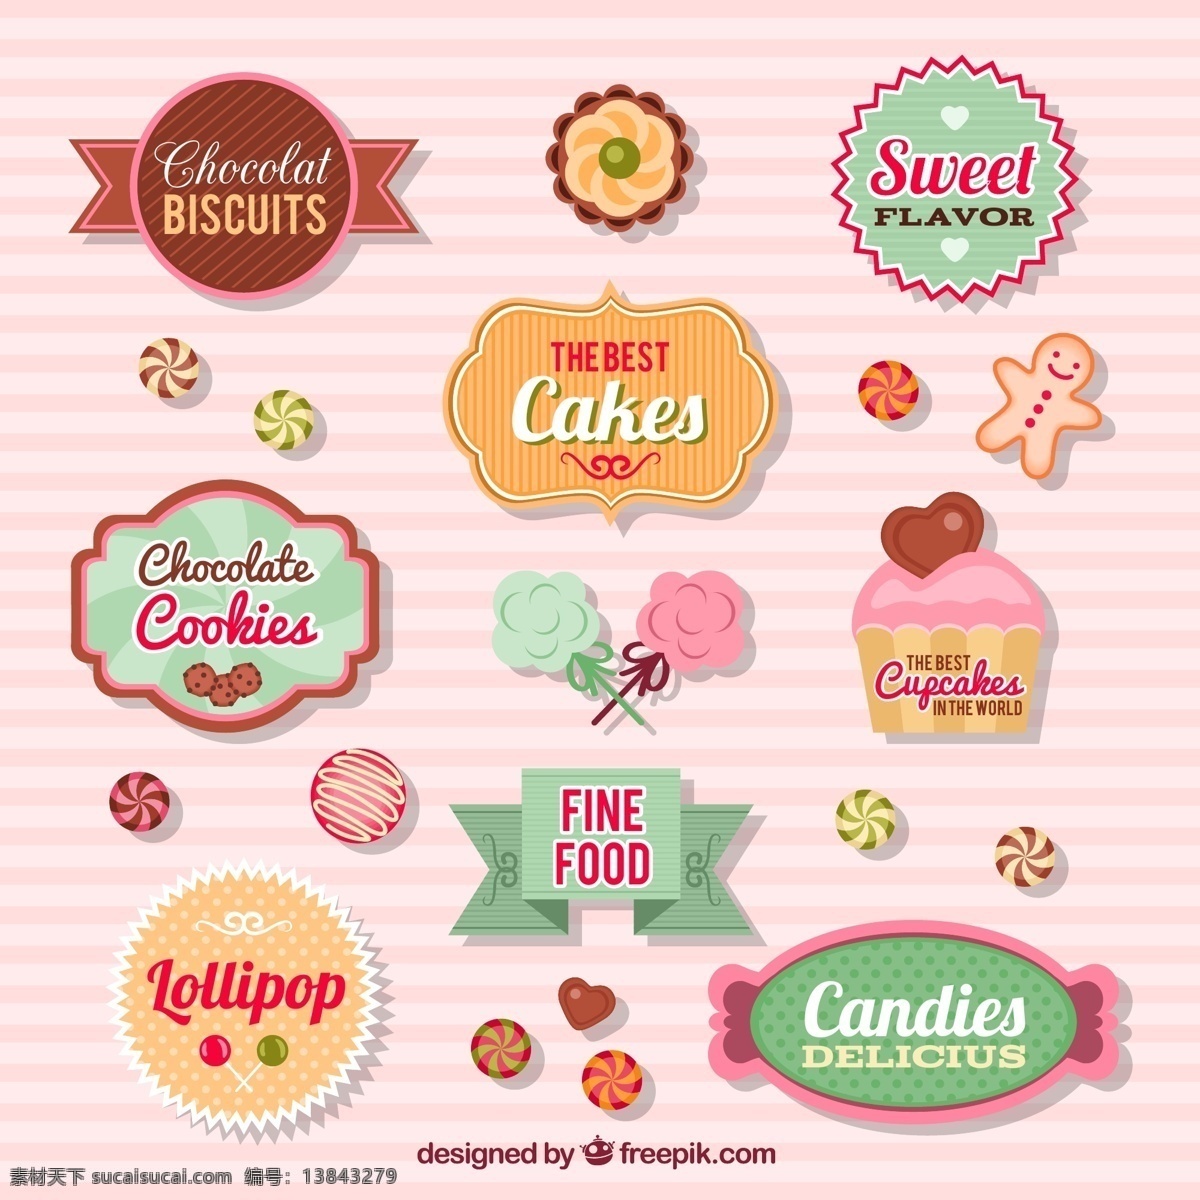 款 创意 甜品 标签 矢量图 棉花糖 饼干 卡通 糖果 甜美 边框 棒棒糖 蛋糕 巧克力 蛋挞 食物 生活百科 餐饮美食 白色